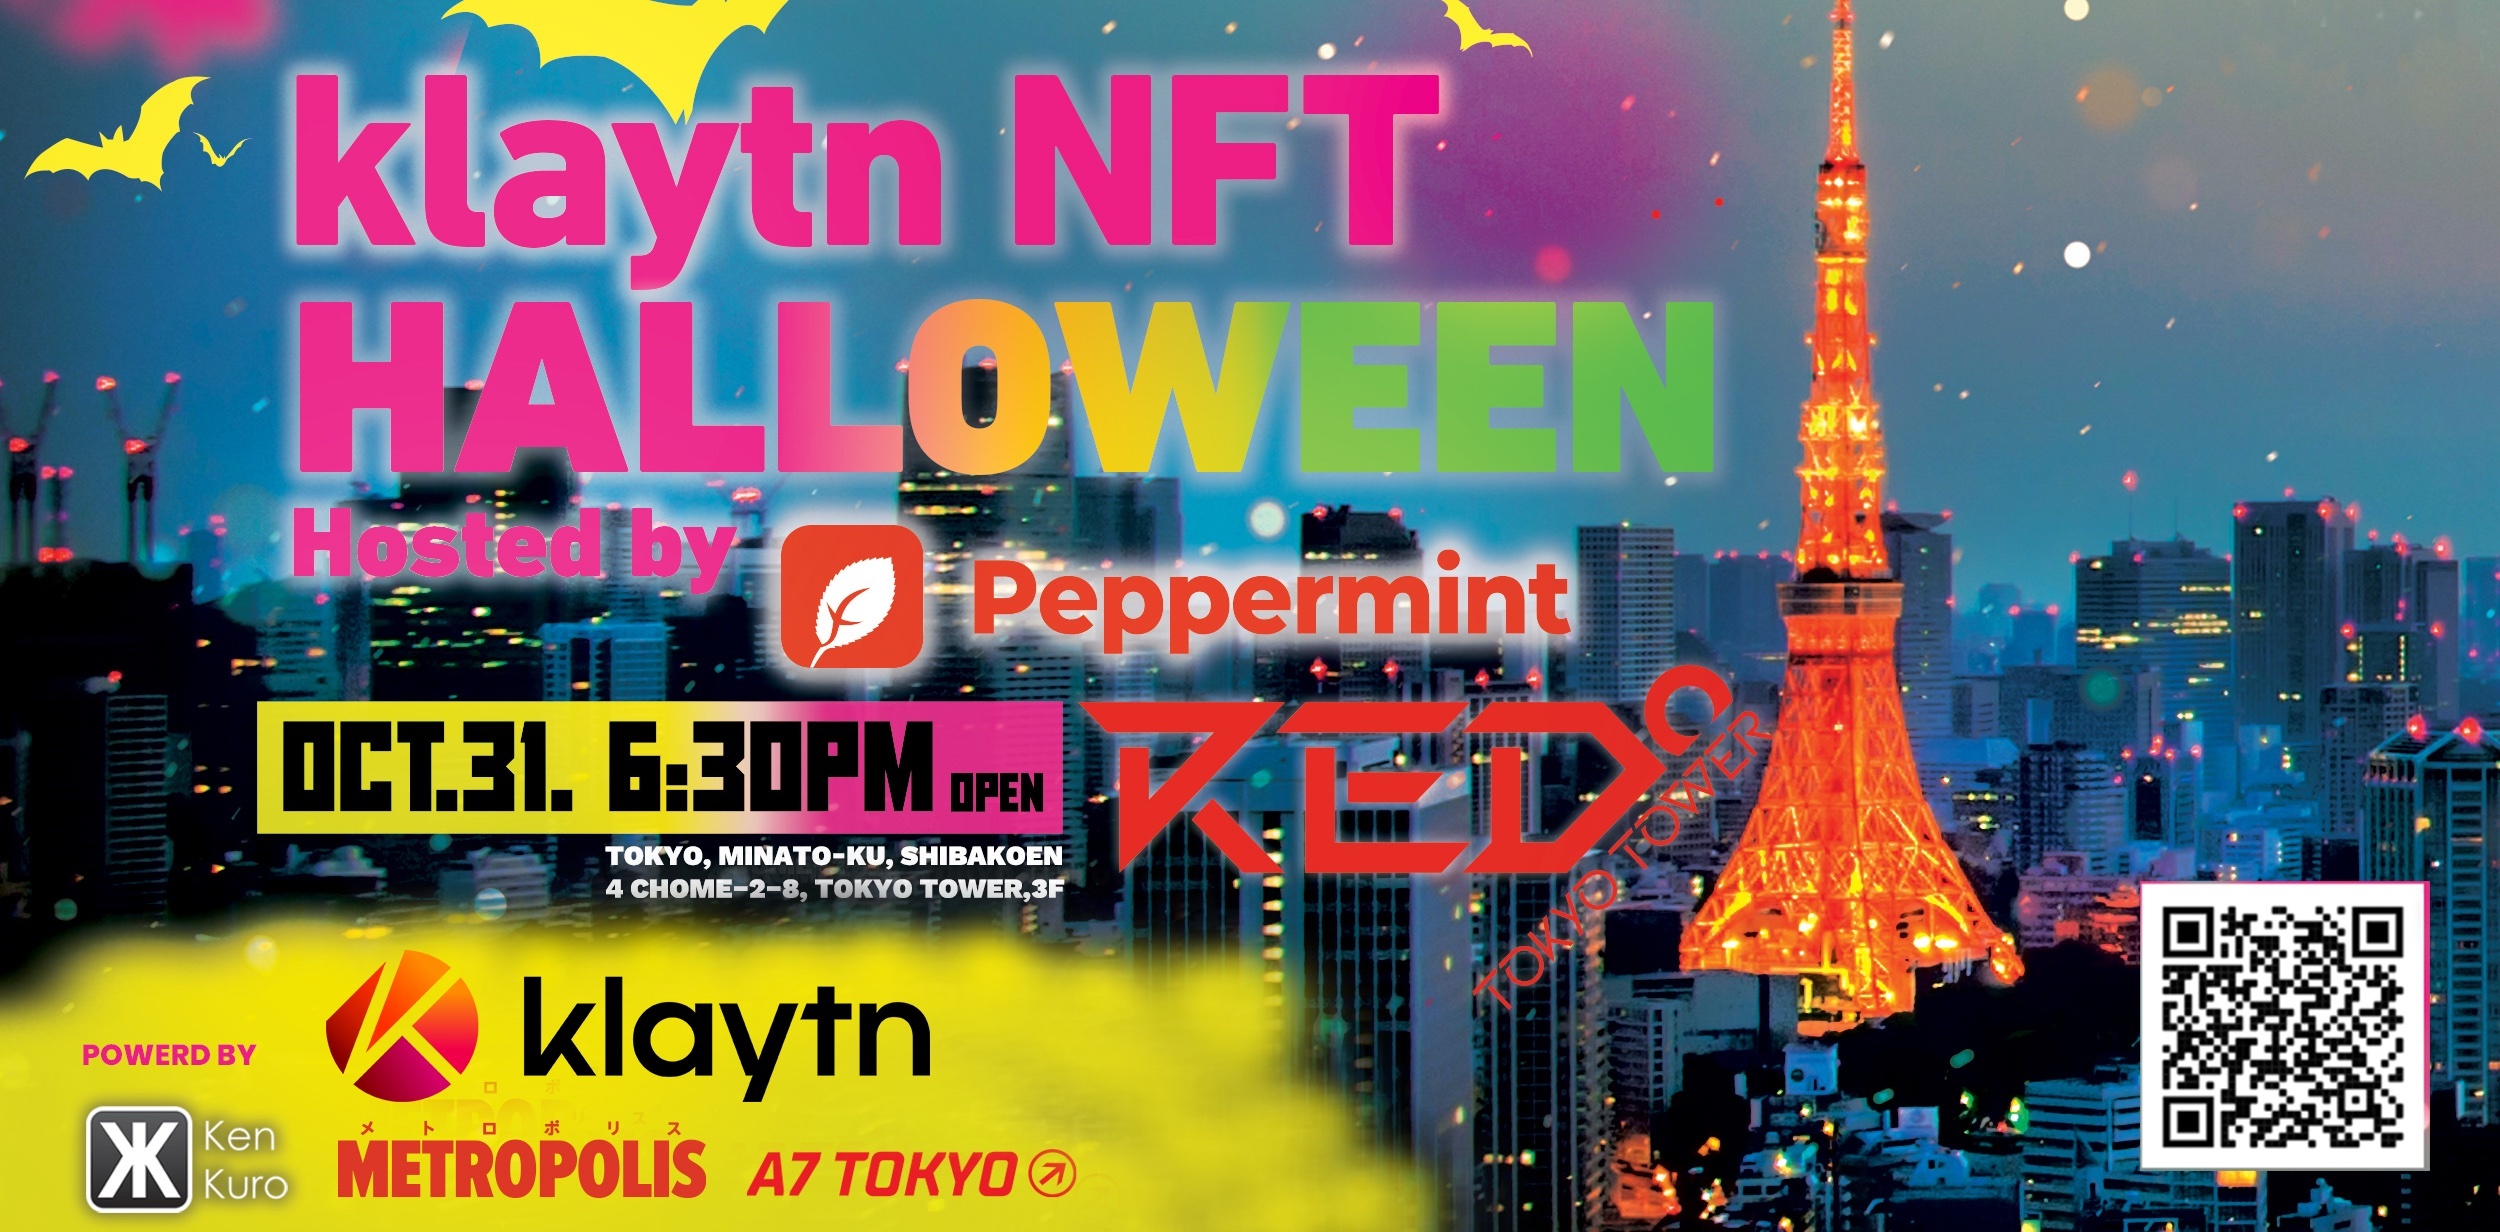 200名まで入場無料！KlaytnとPeppermint App、
東京タワーでハロウィンNFTパーティーを開催